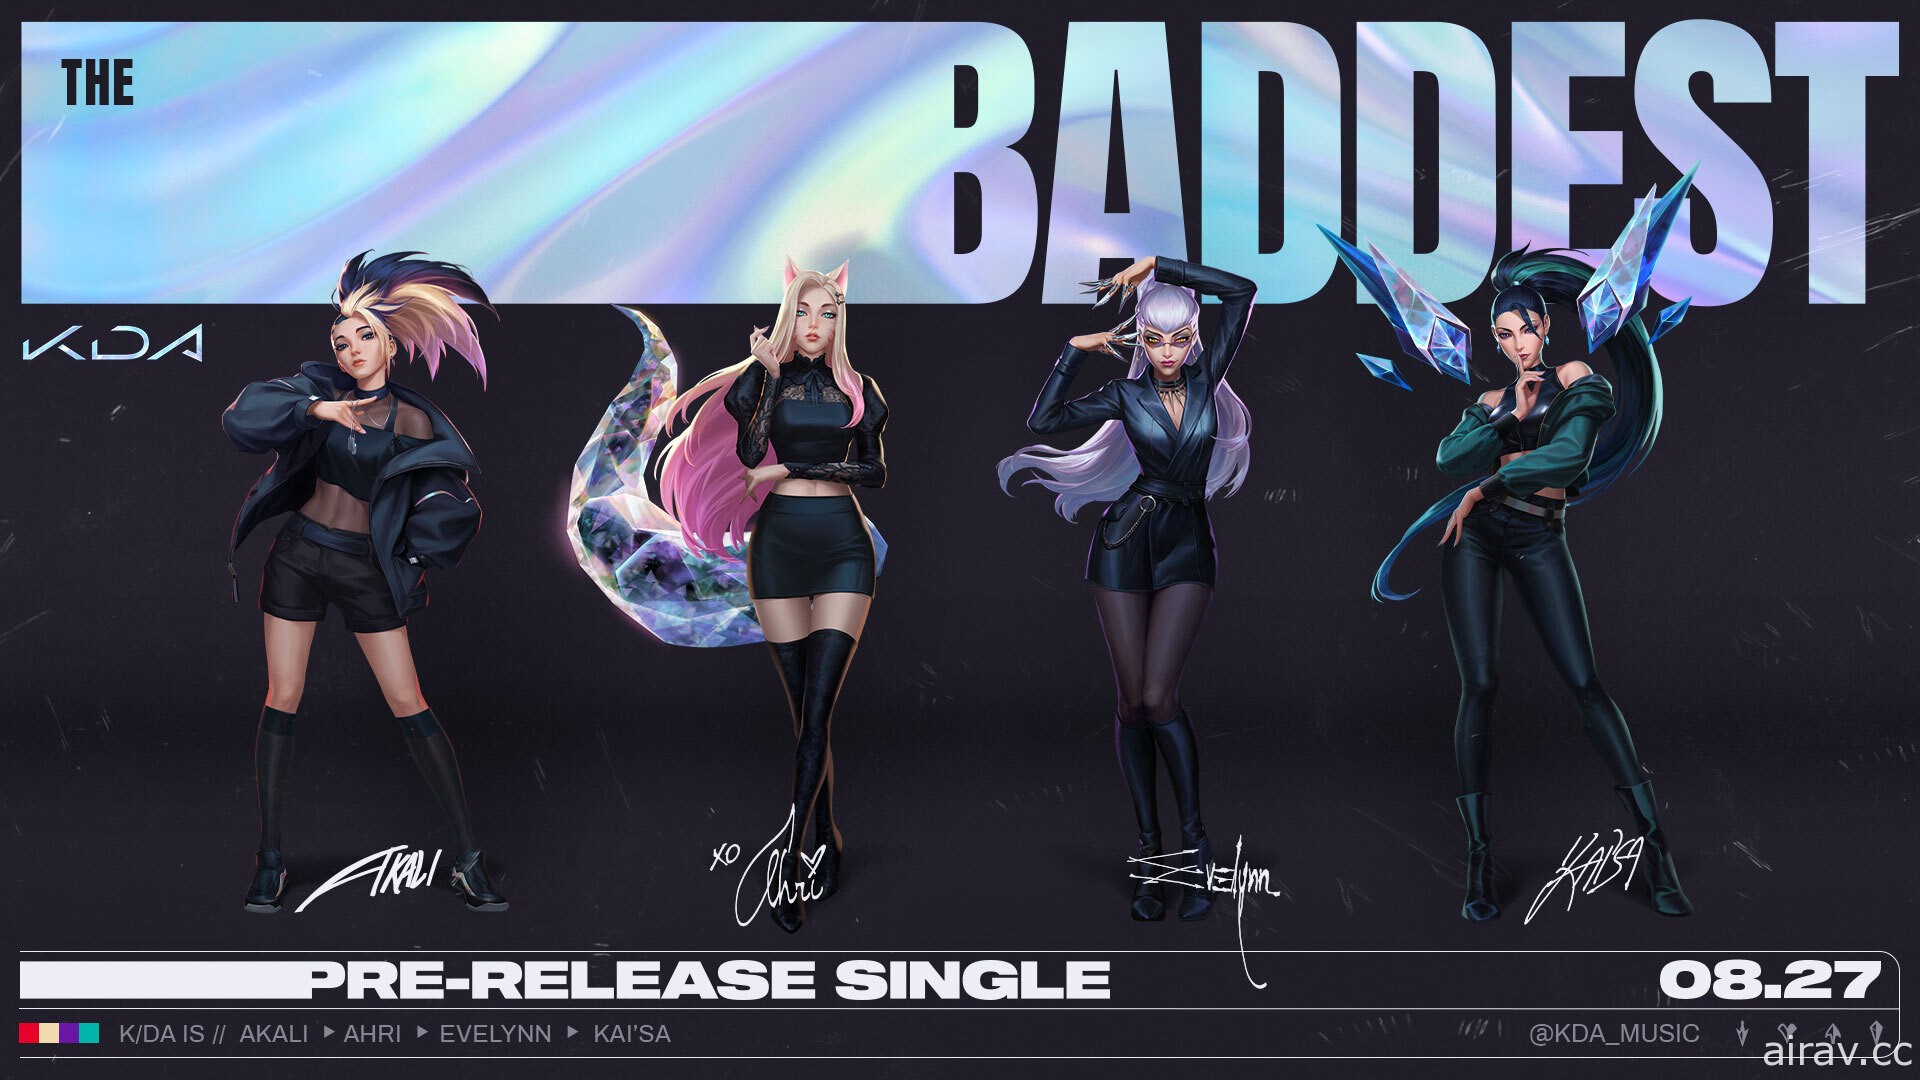 《英雄联盟》揭开虚拟团体 K/DA 新单曲《The BADDEST》真人舞蹈版影片